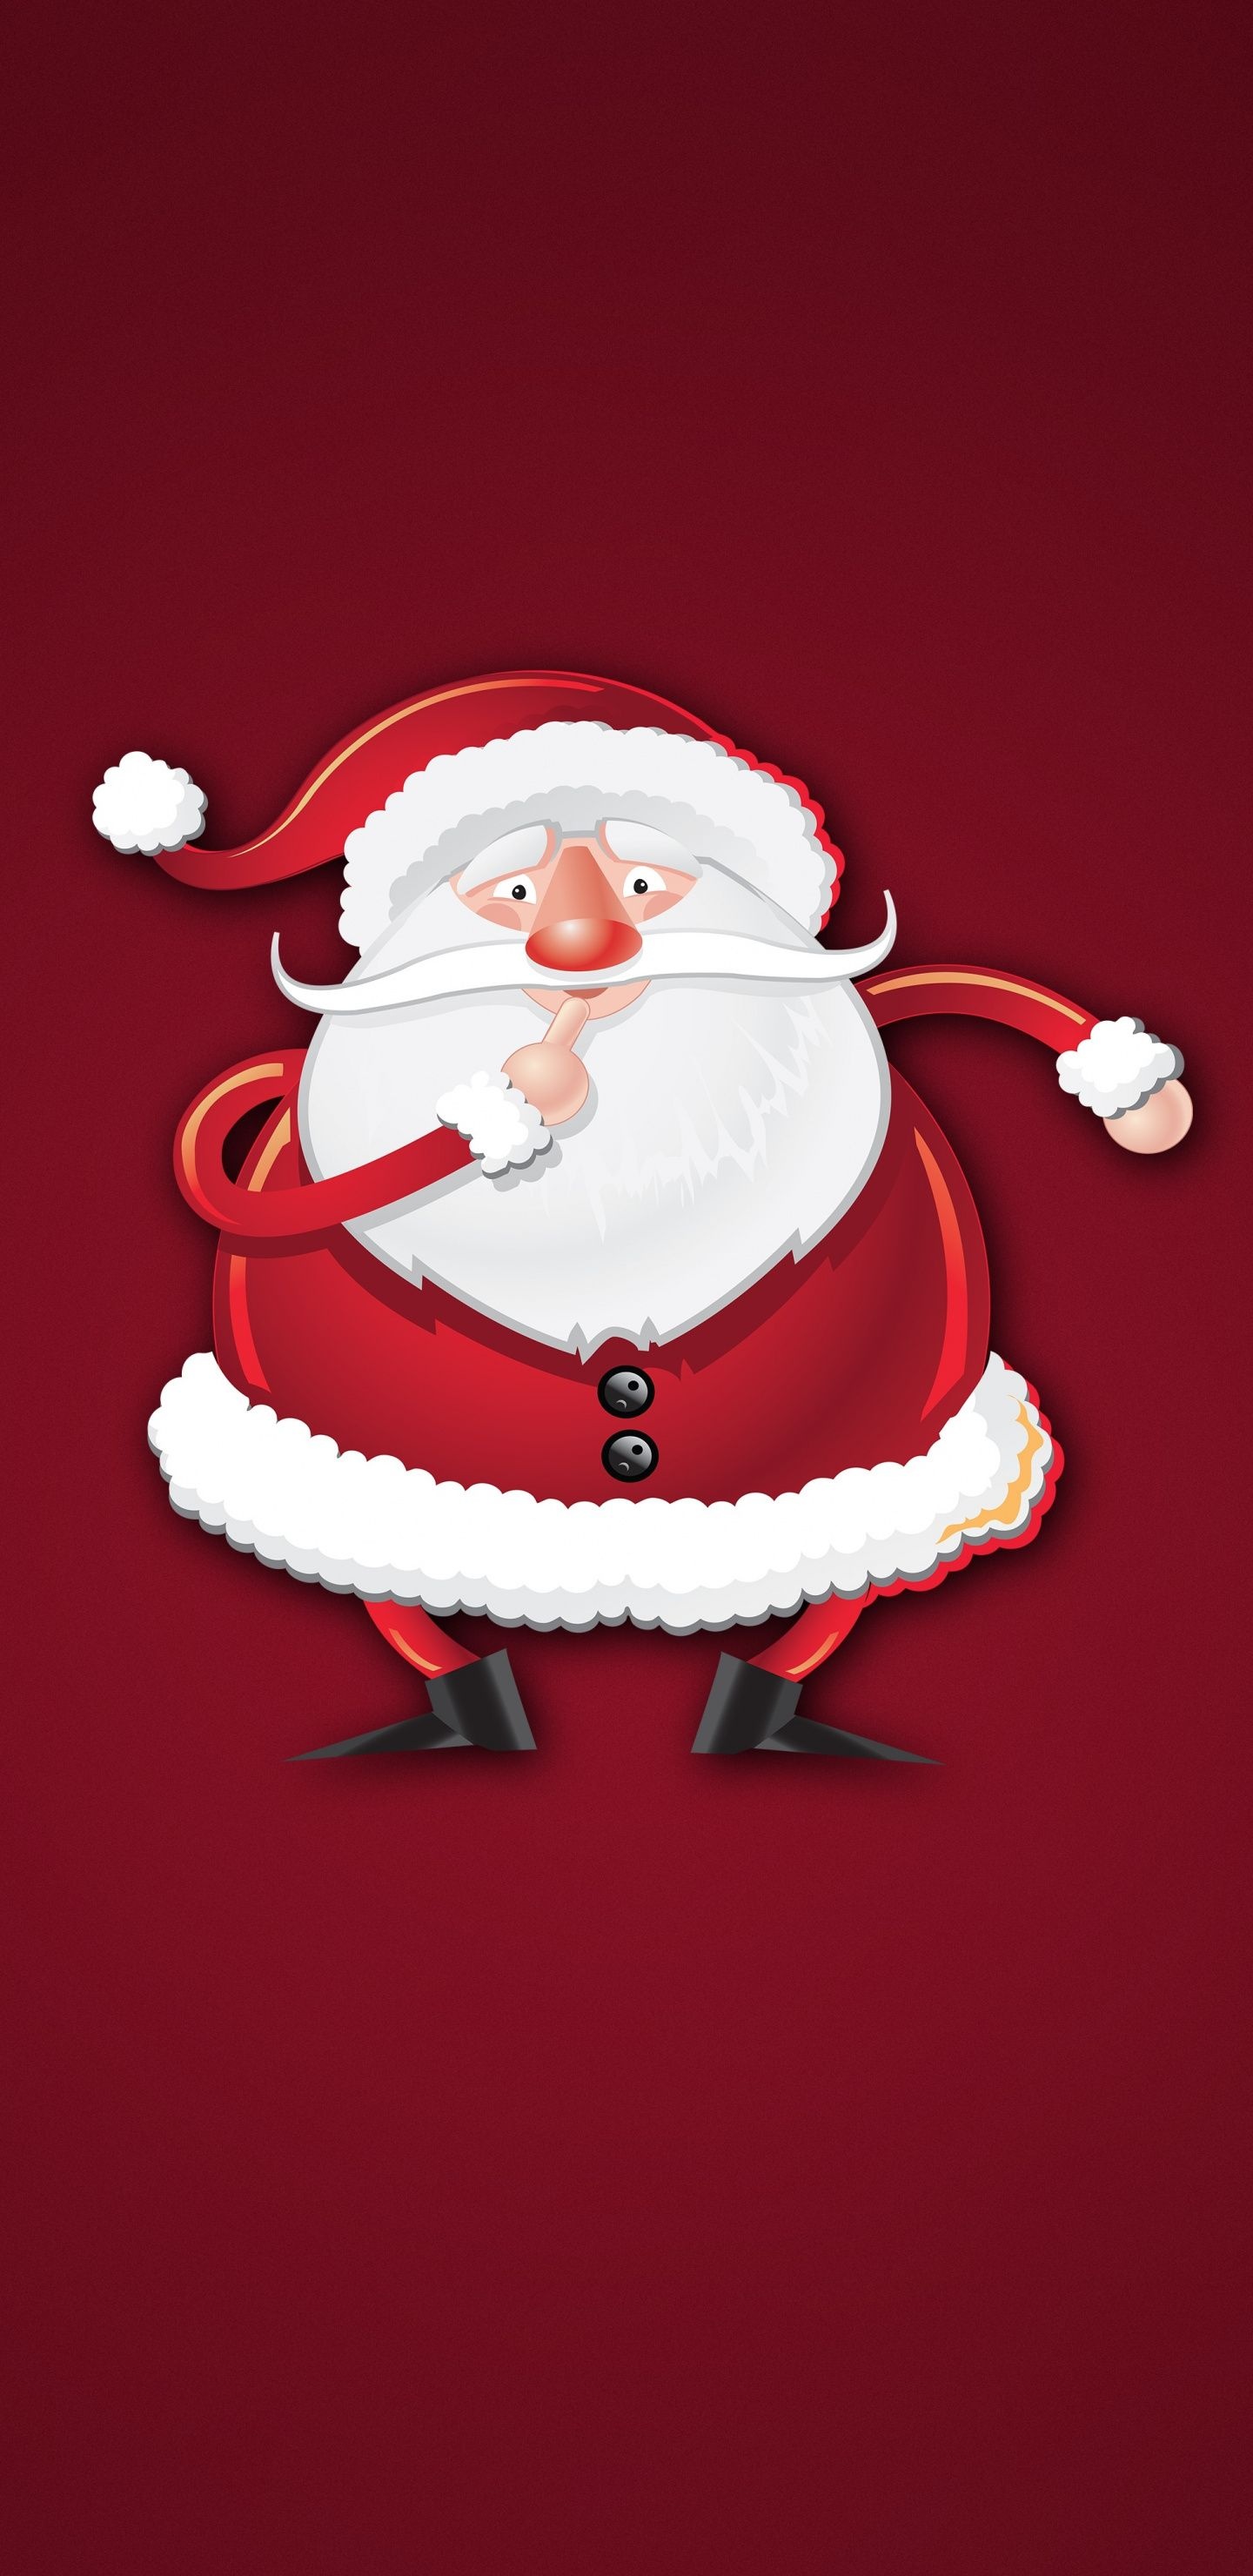 Father Christmas, Christmas wallpapers, Festive holiday cheer, Seasonal joy, 1440x2960 HD Handy